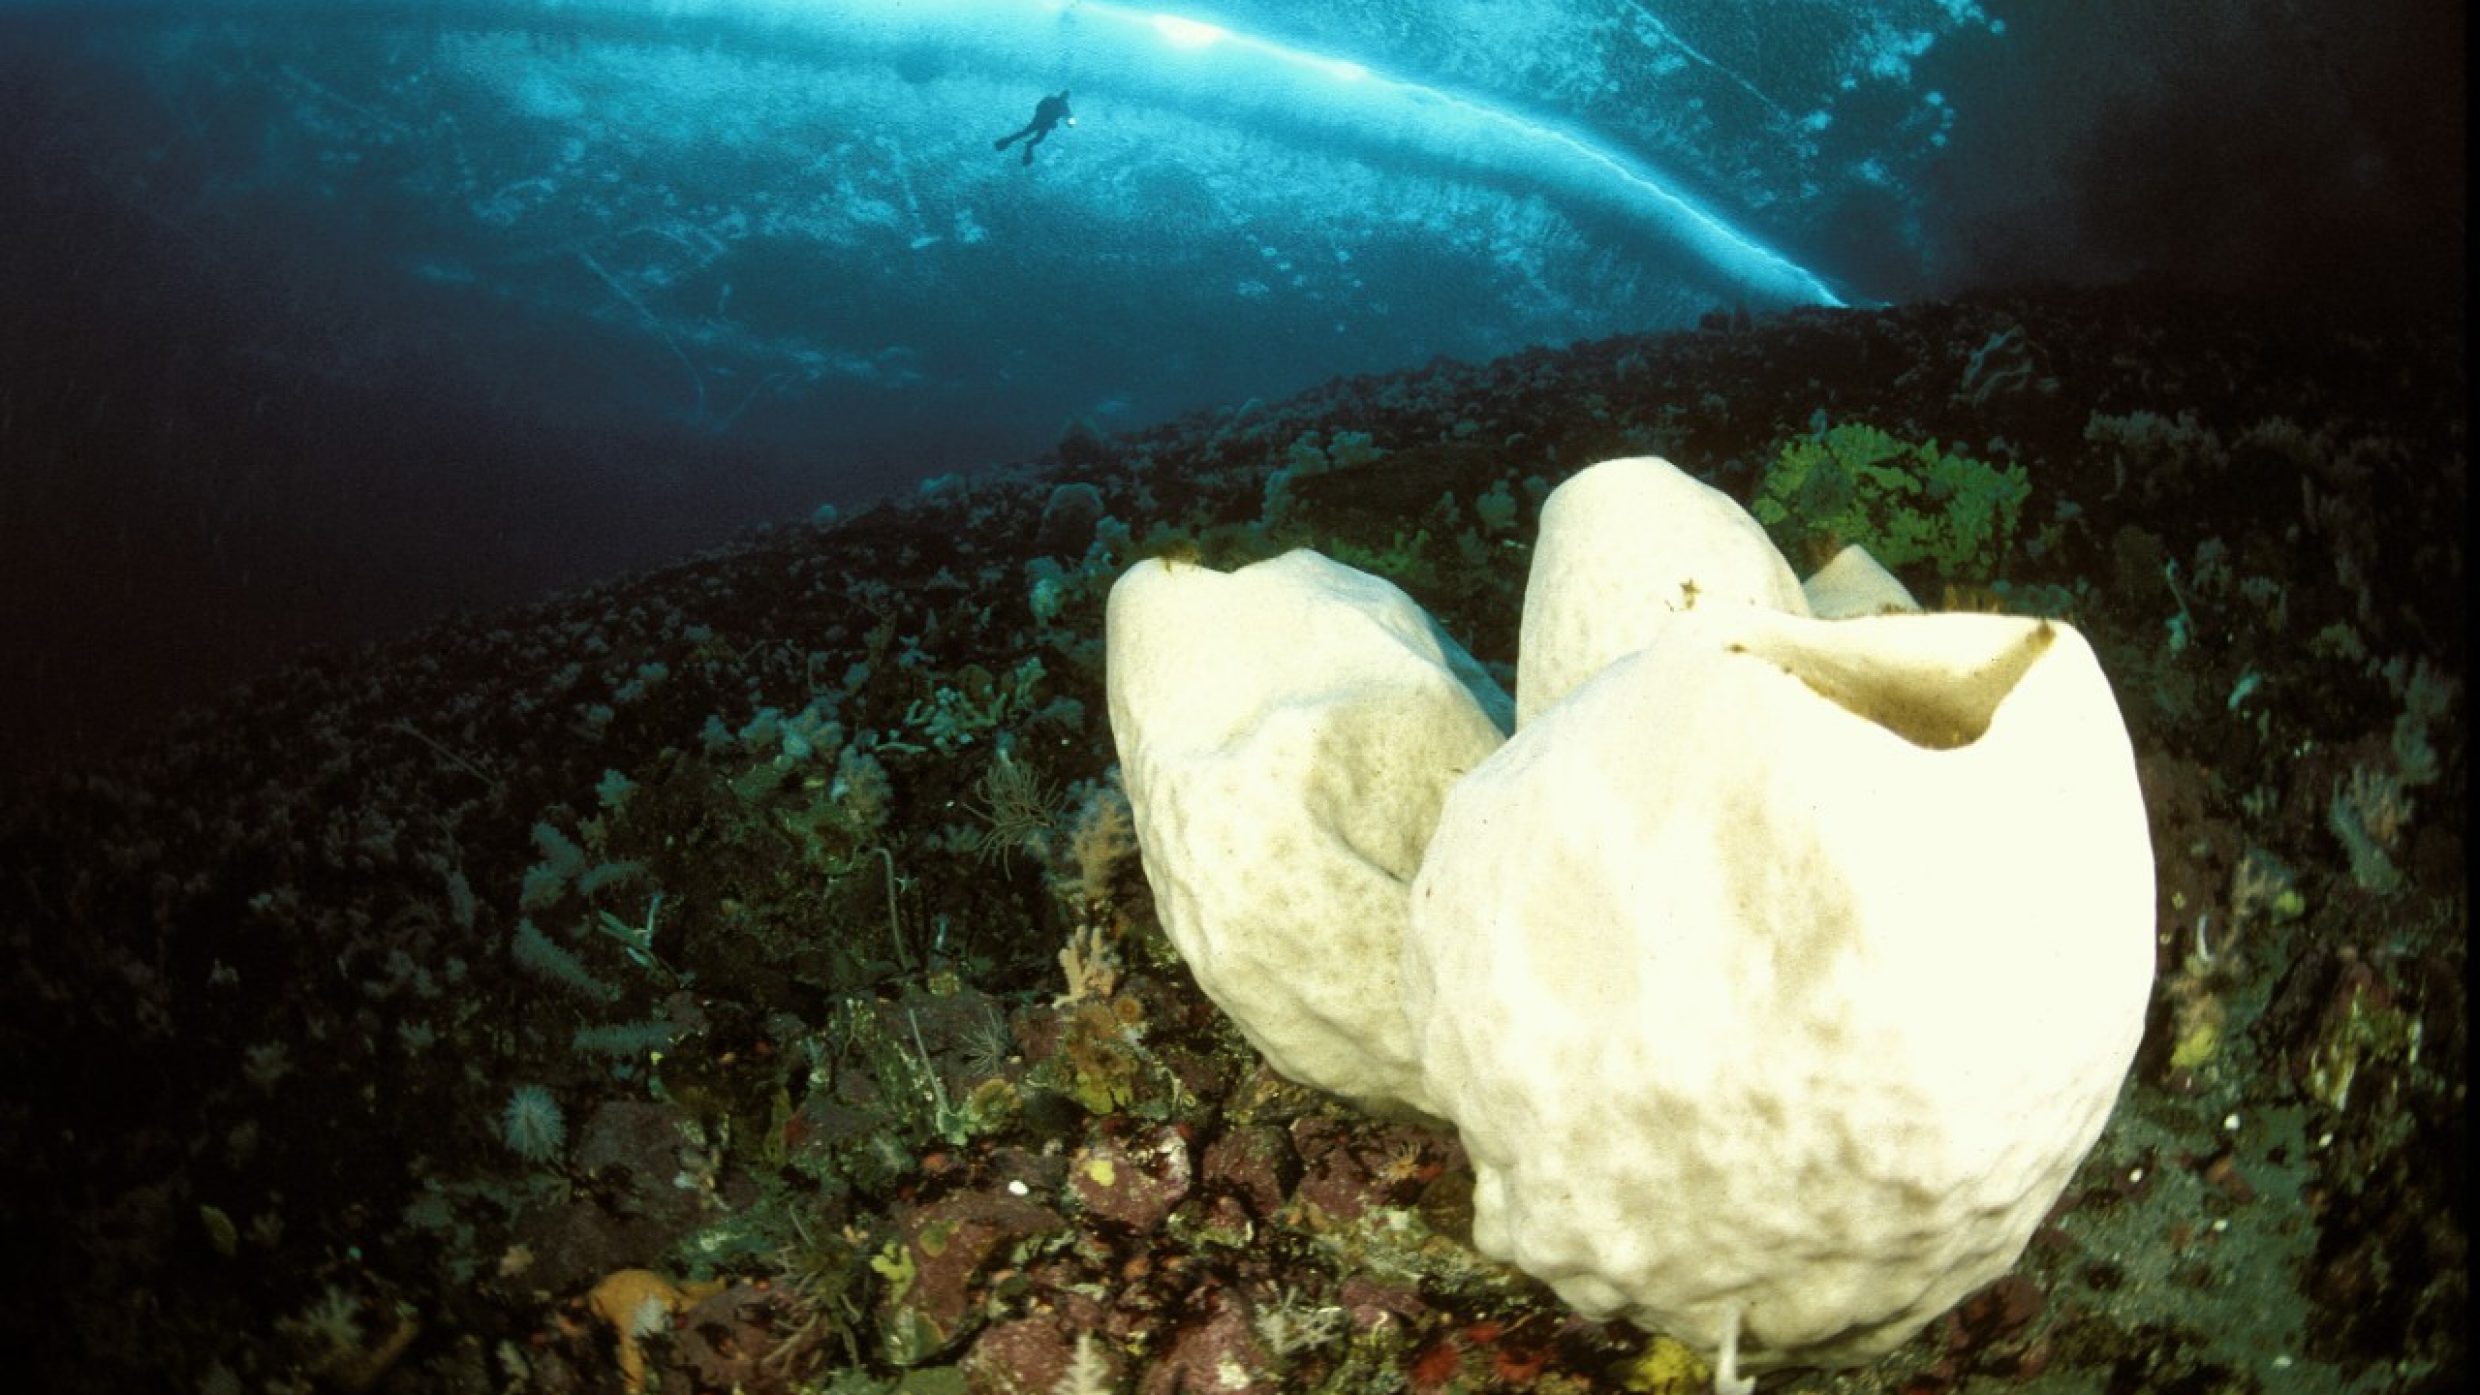 L’éponge géante de l’Antarctique Anoxycalyx joubini peut vivre jusqu’à 10 000 ans. Ces grosses éponges pouvant atteindre jusqu’à deux mètres ont un métabolisme extrêmement lent du fait du froid et de l’obscurité.